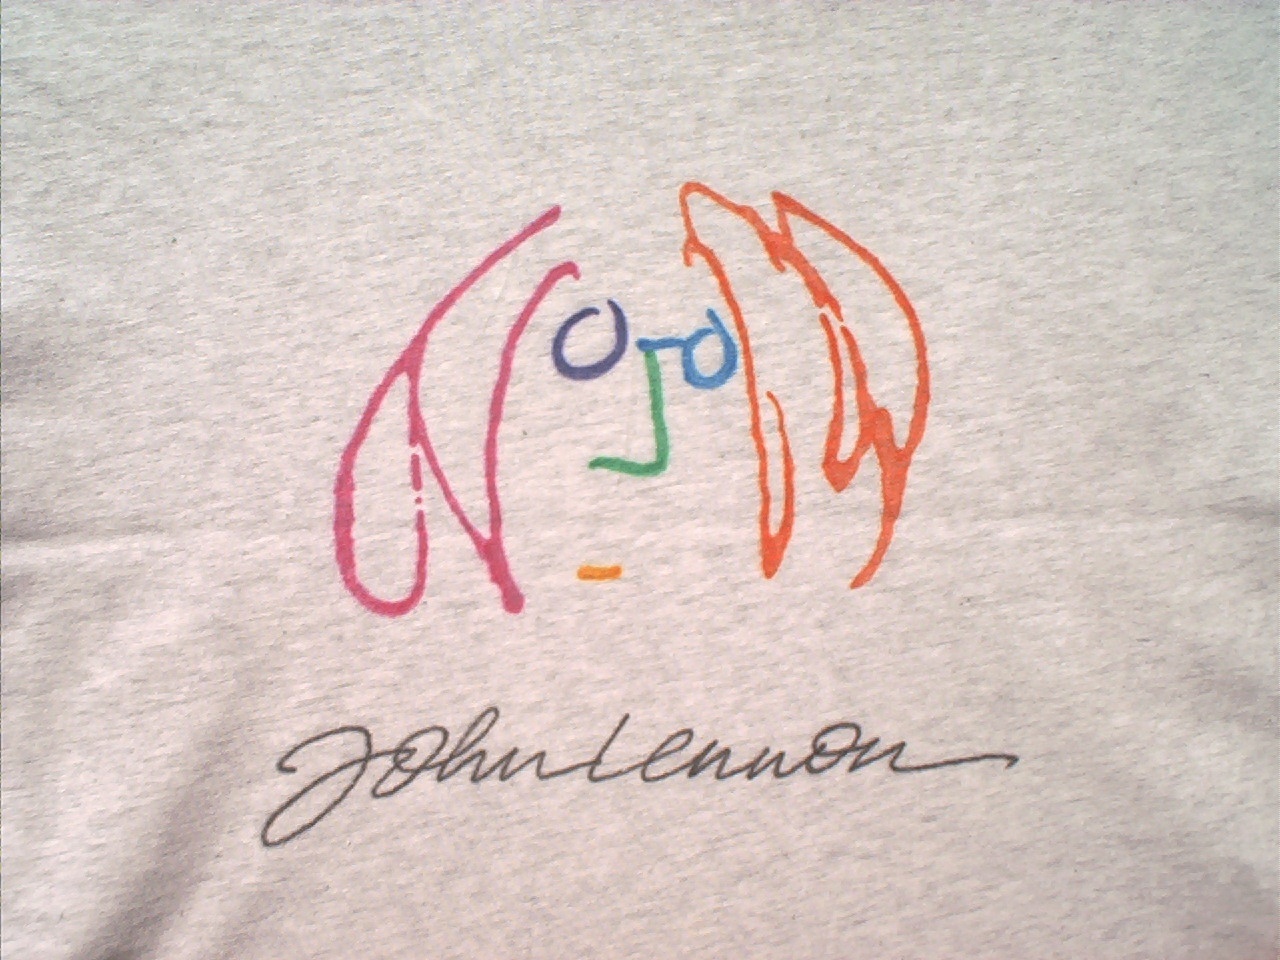 Imagine John Lennon.closeup